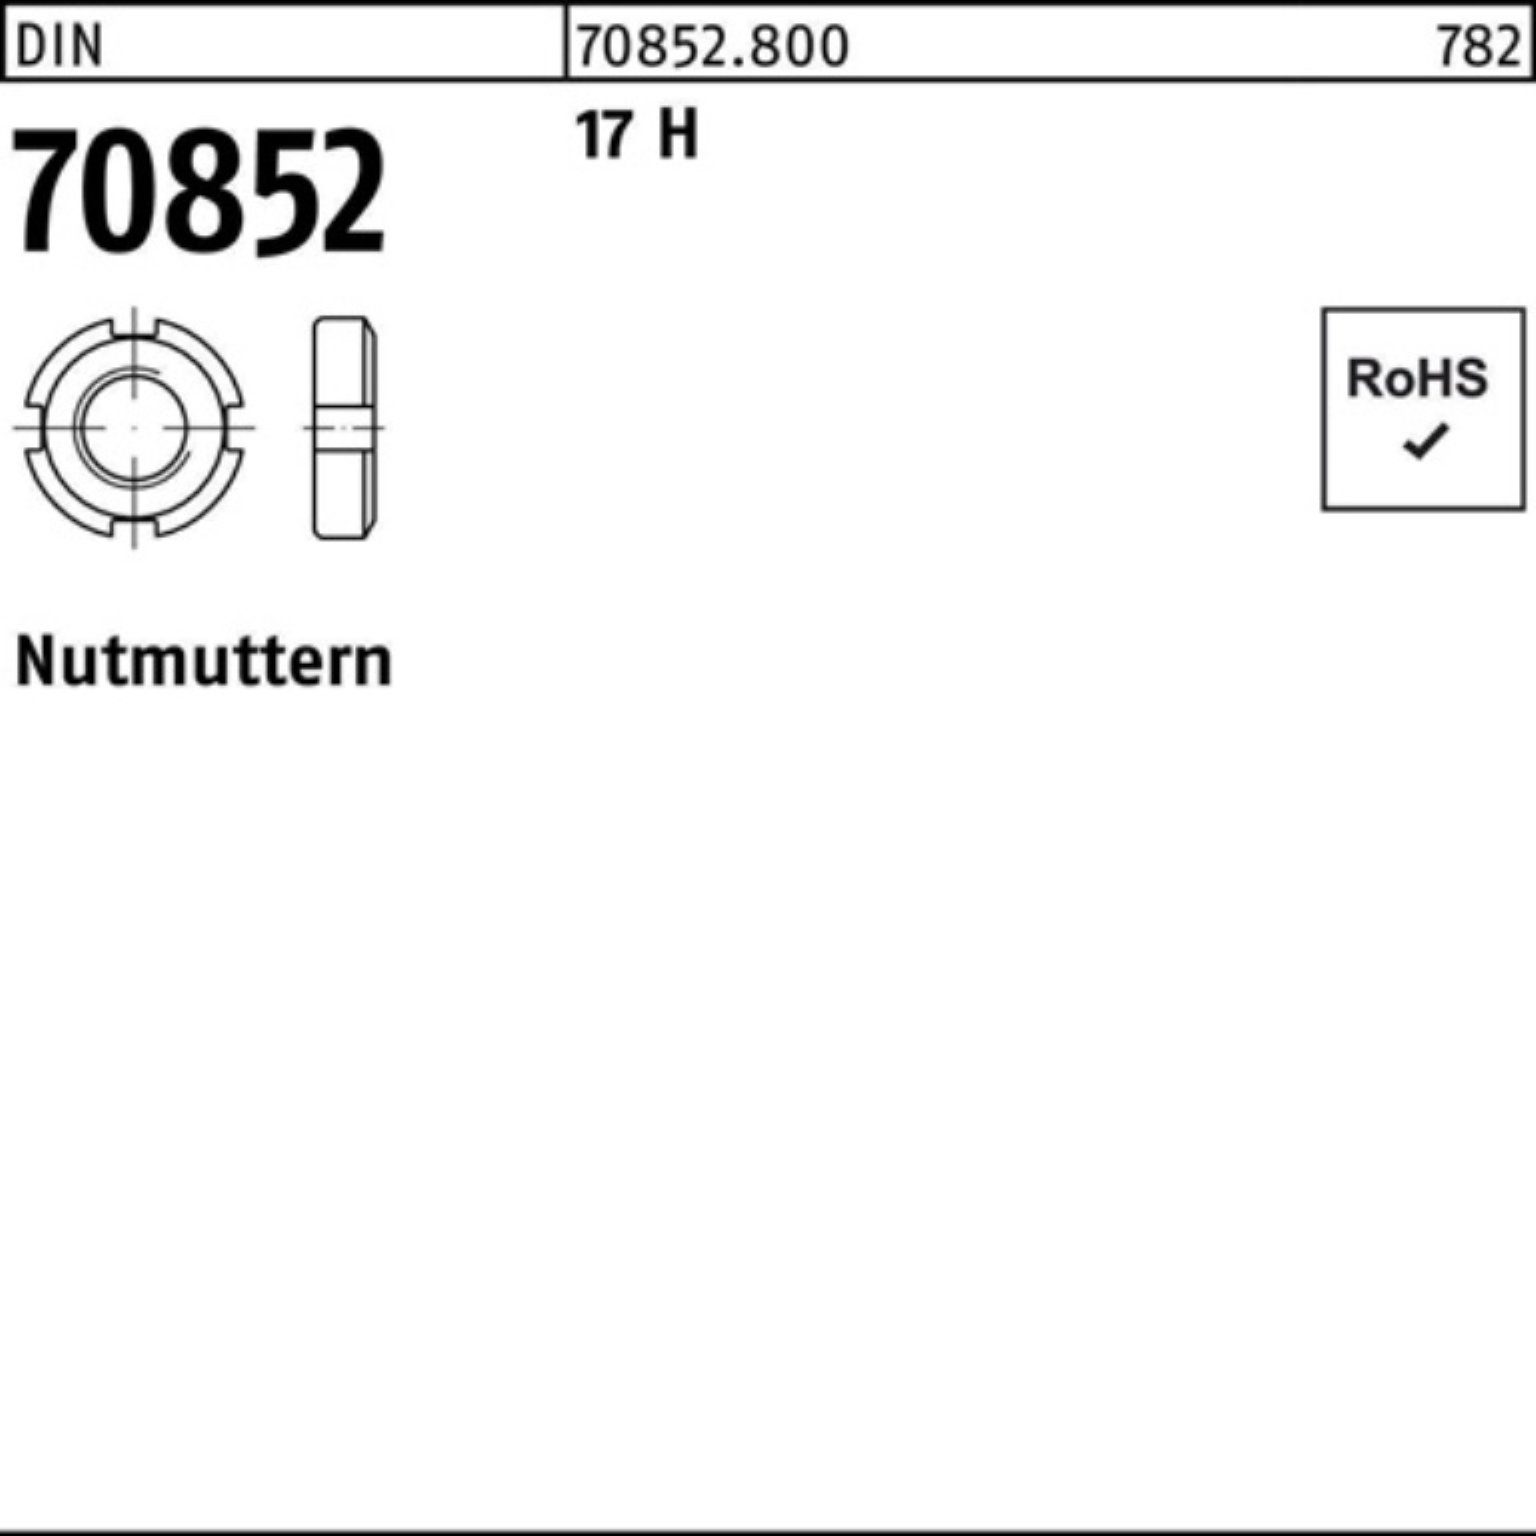 Reyher Nutmutter 100er Pack Nutmutter DIN 70852 M35x 1,5 17 H 1 Stück DIN 70852 17 H N